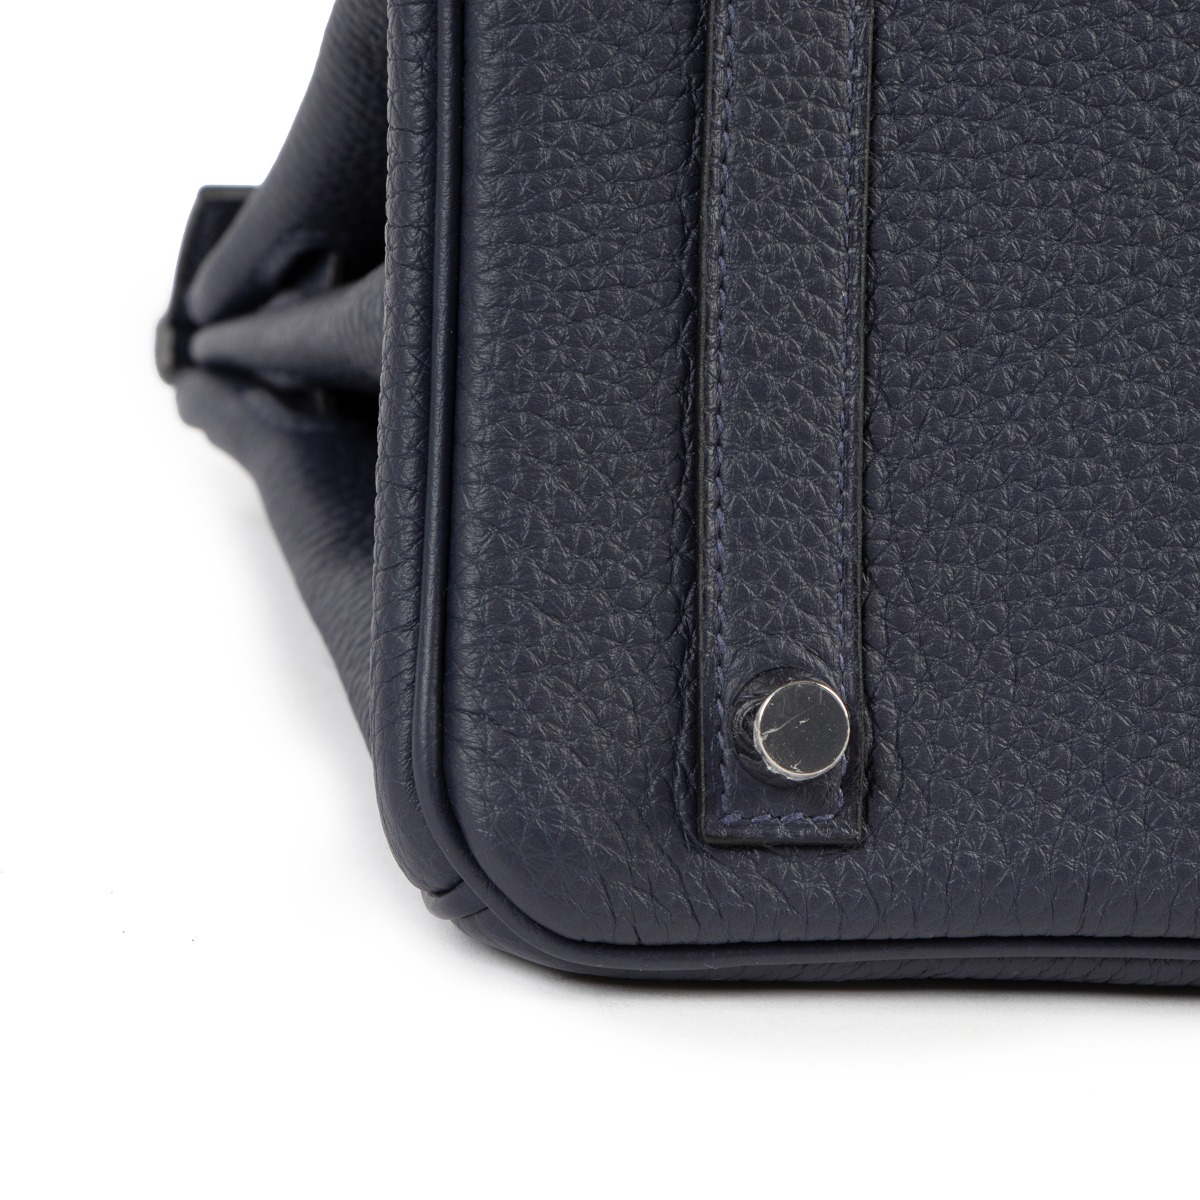 Hermès Birkin Limited Edition 30 Bleu Nuit/Vert Cyprès Officier Togo  Palladium Hardware PHW